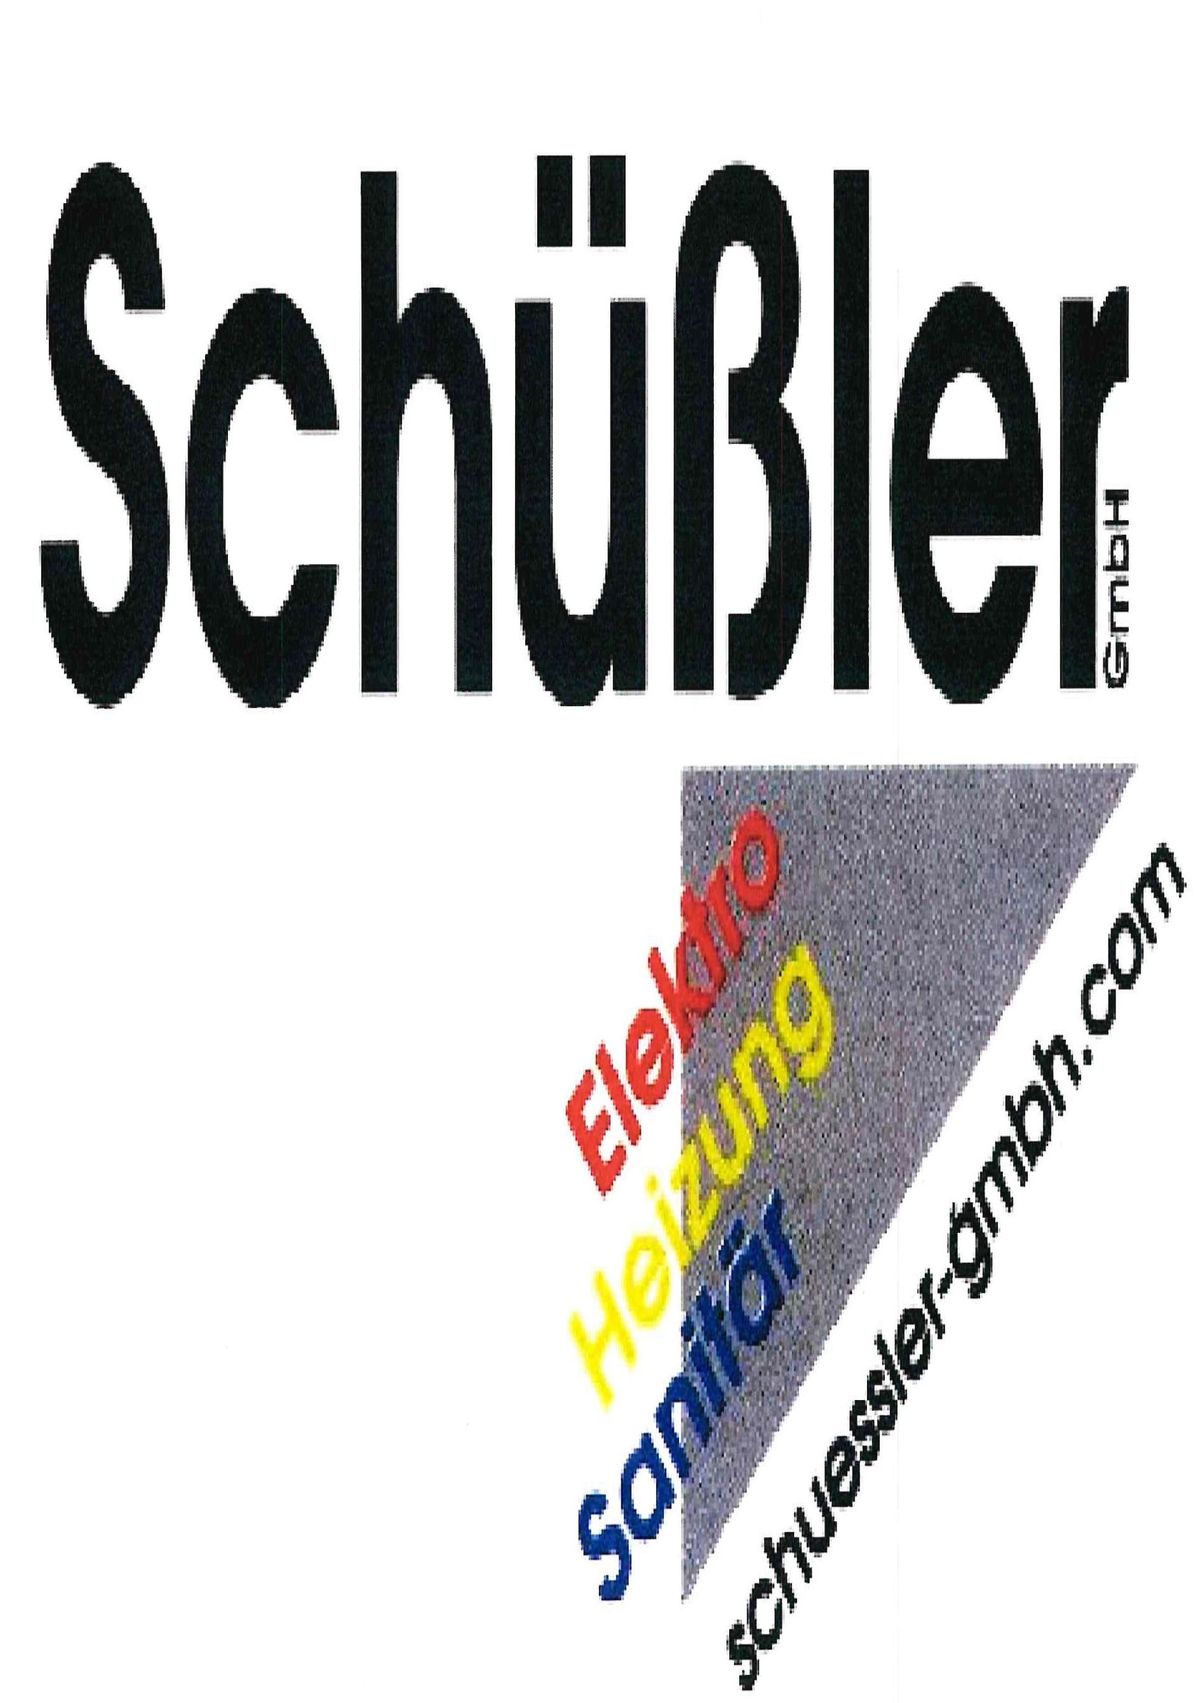 Schüssler GmbH